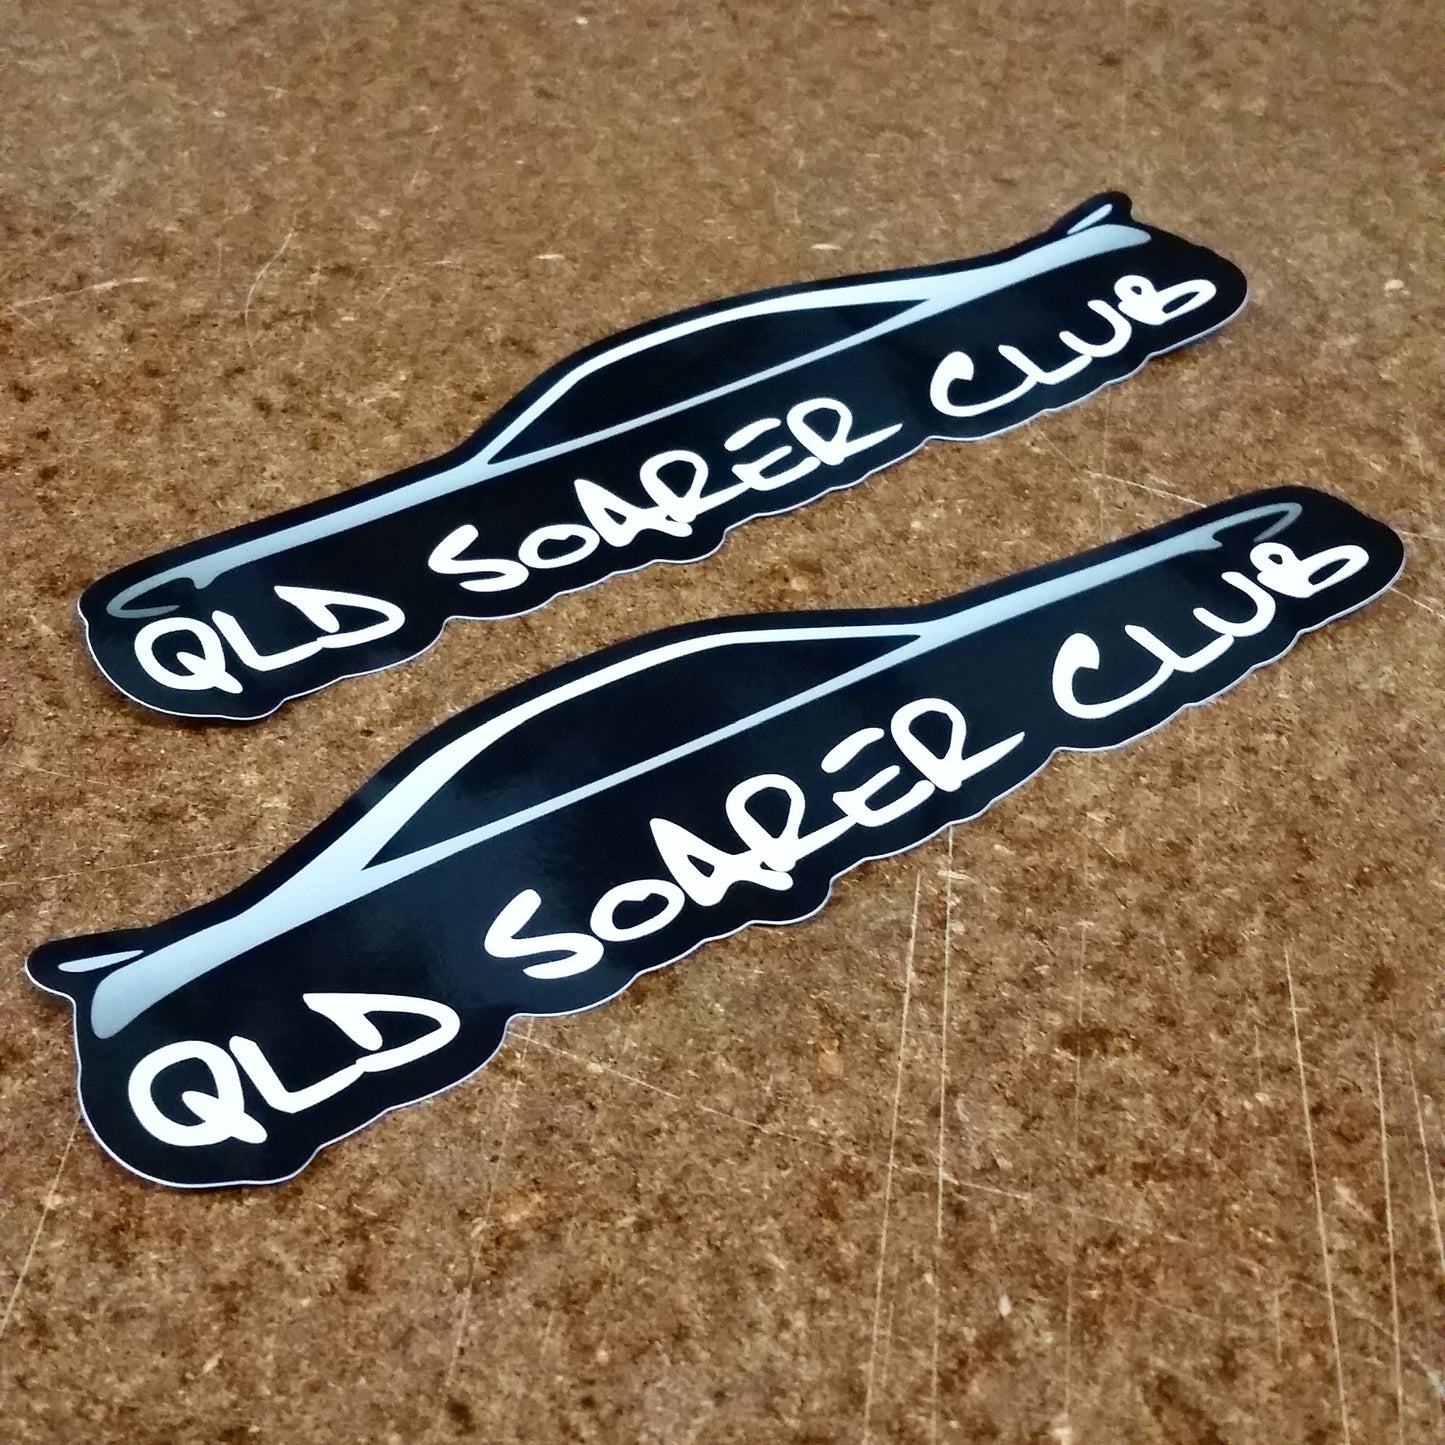 QLD Soarer Club Silhouette Sticker